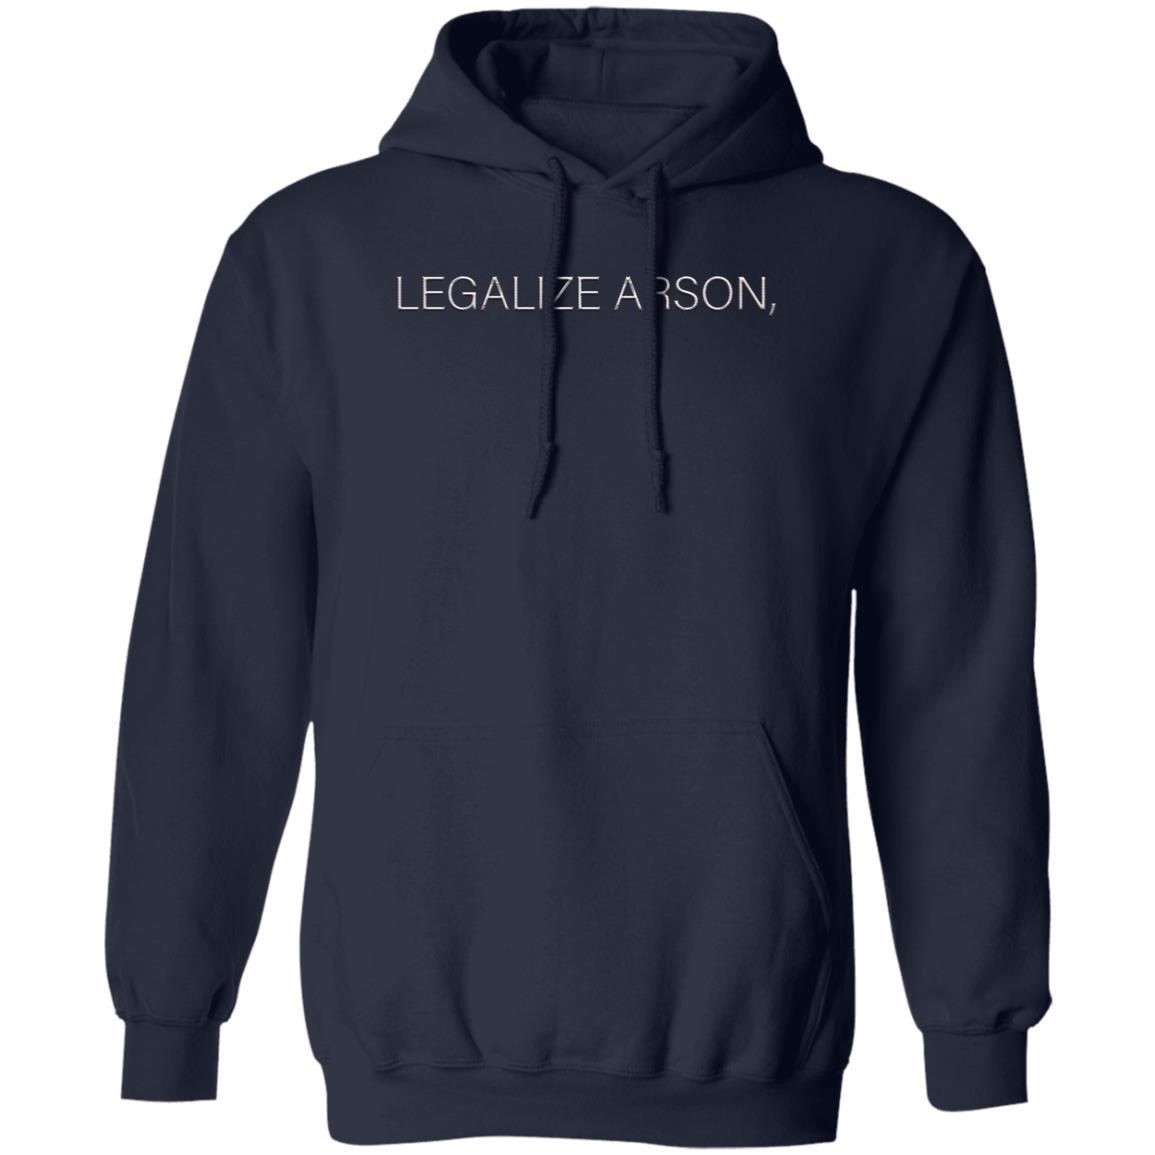 Legalize arson shirt 1